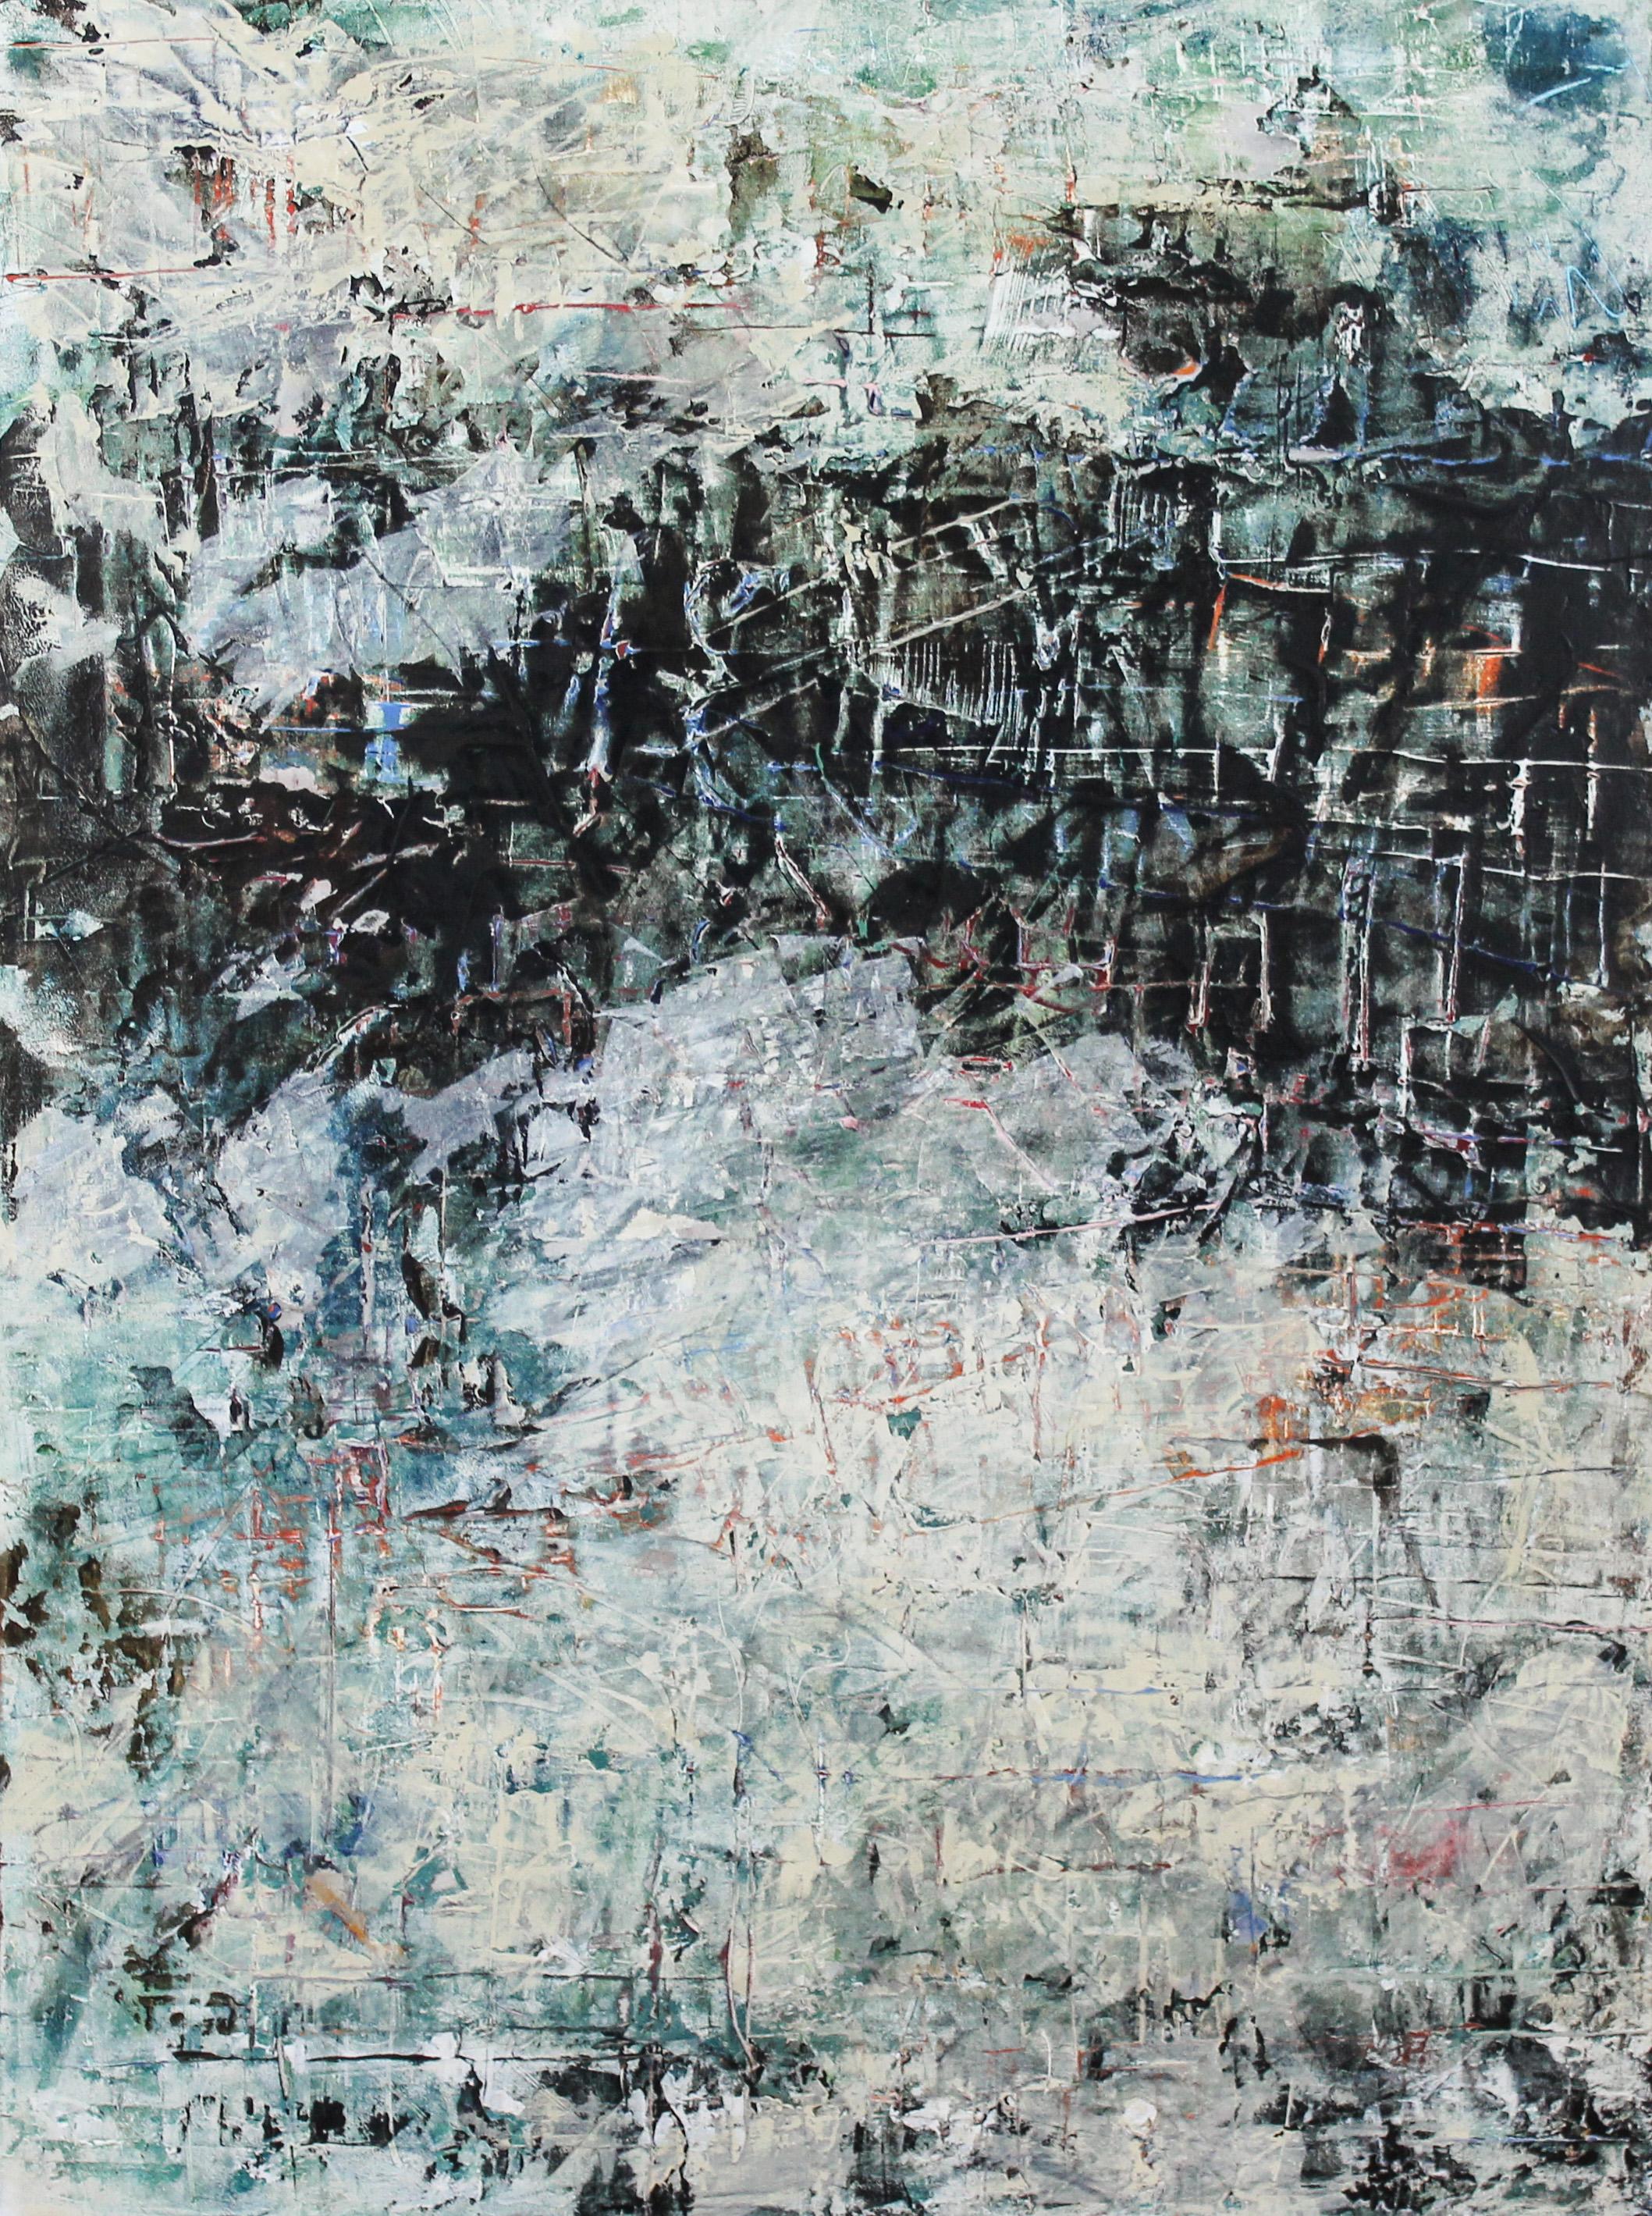 Turmoil, Abstract Painting - Mixed Media Art by Gary J. Noland Jr.